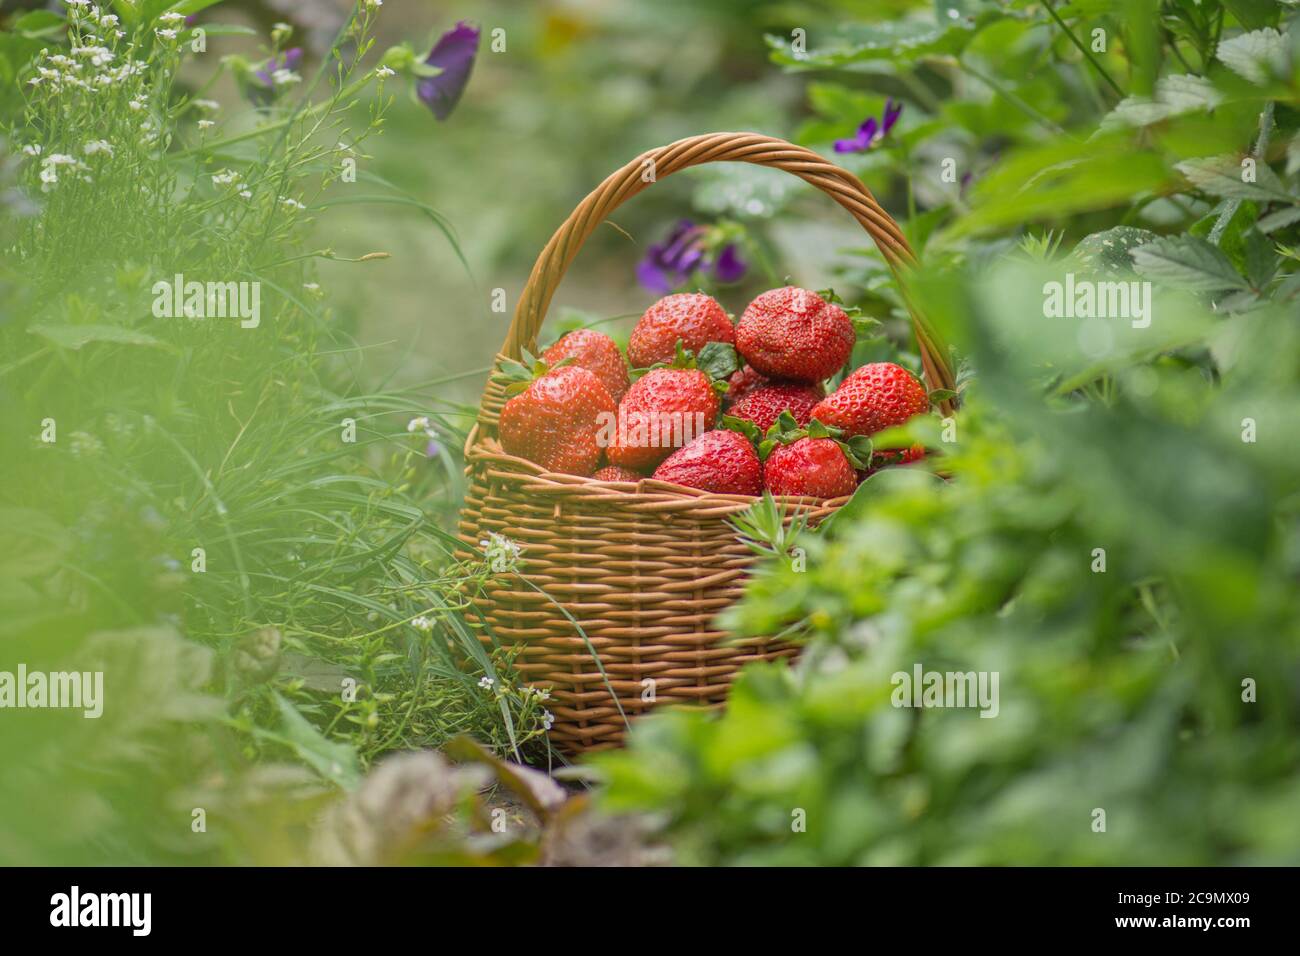 Erdbeere mit Blatt und blühende Blume aus nächster Nähe. Erdbeeren an sonnigen Tagen. Stockfoto